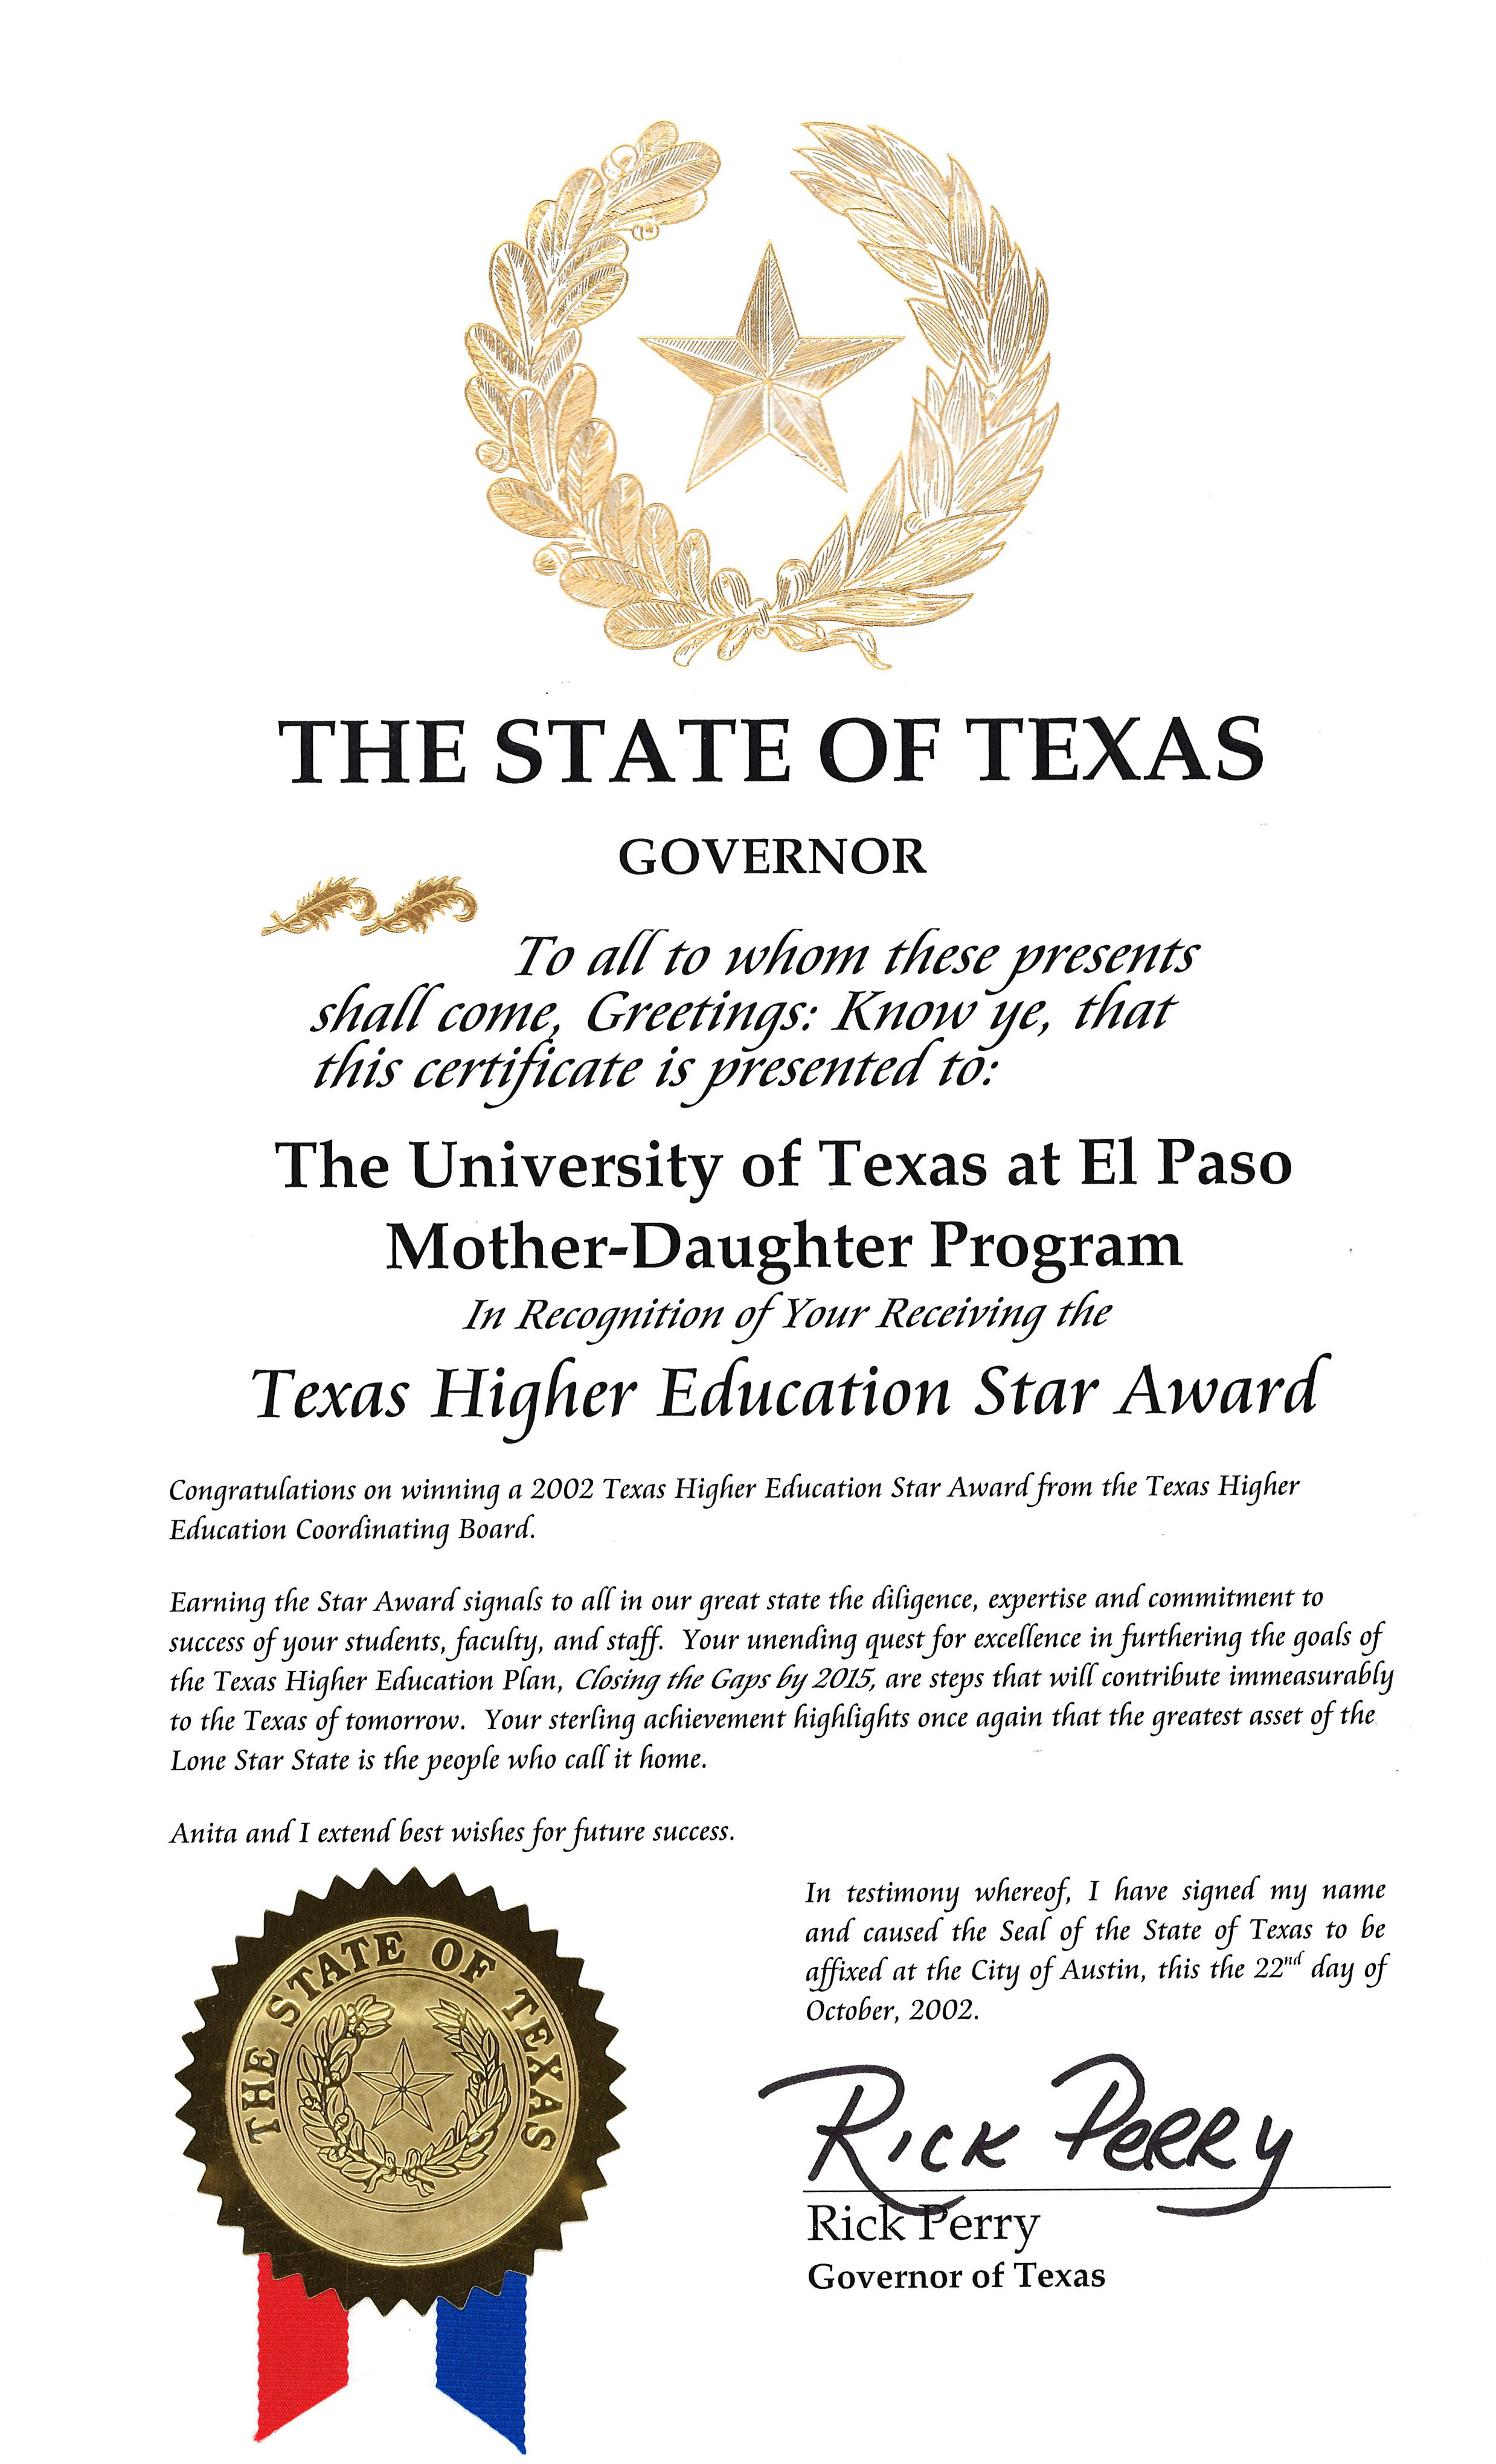 Texas Higher Education Star Award